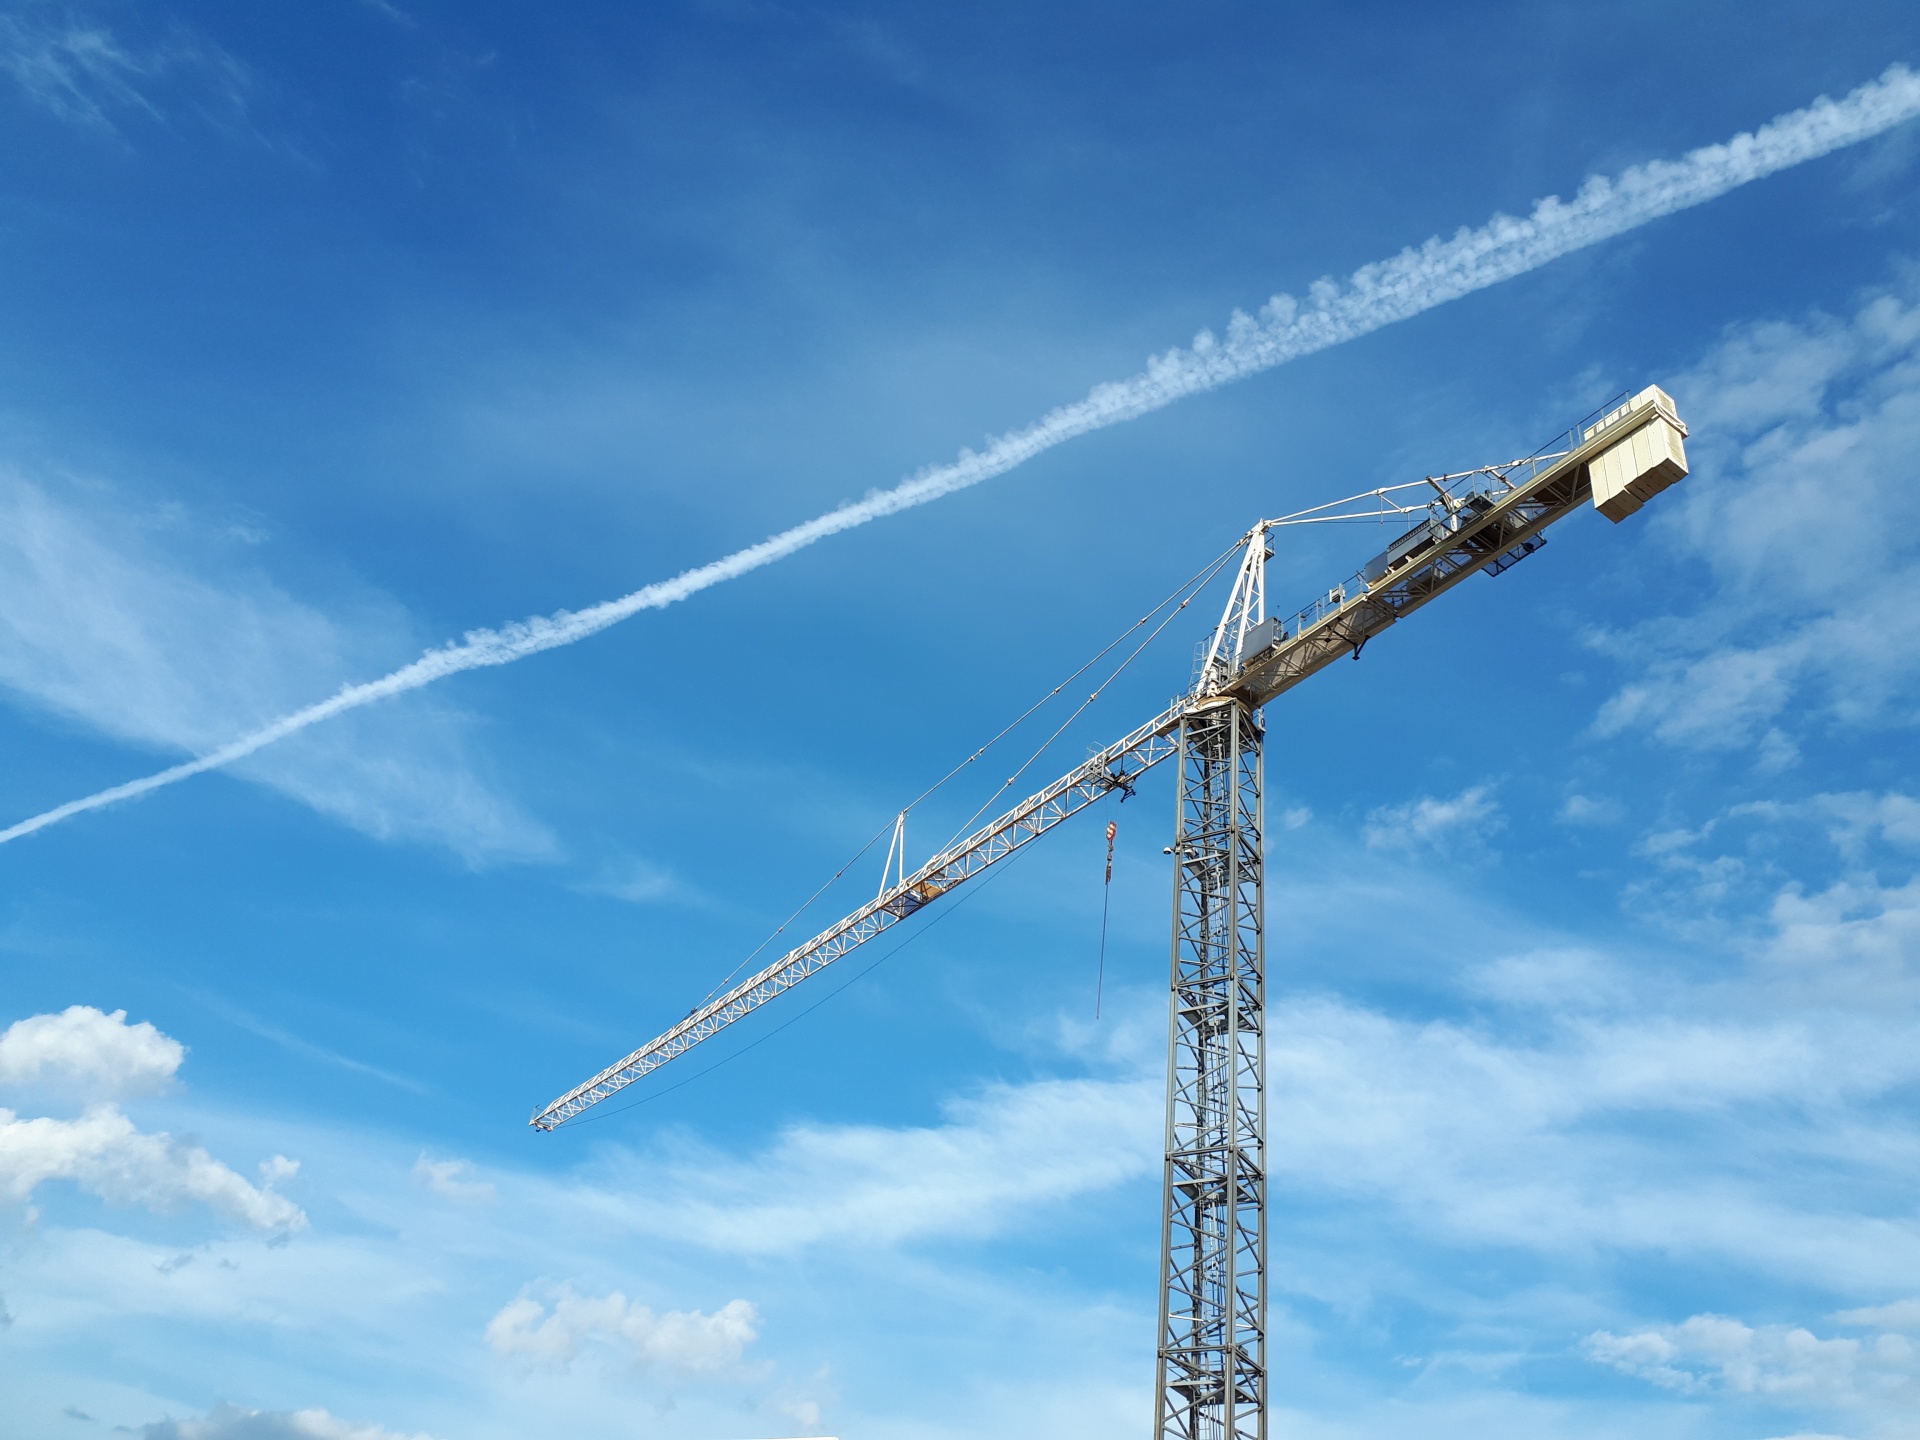 A Crane In The Sky